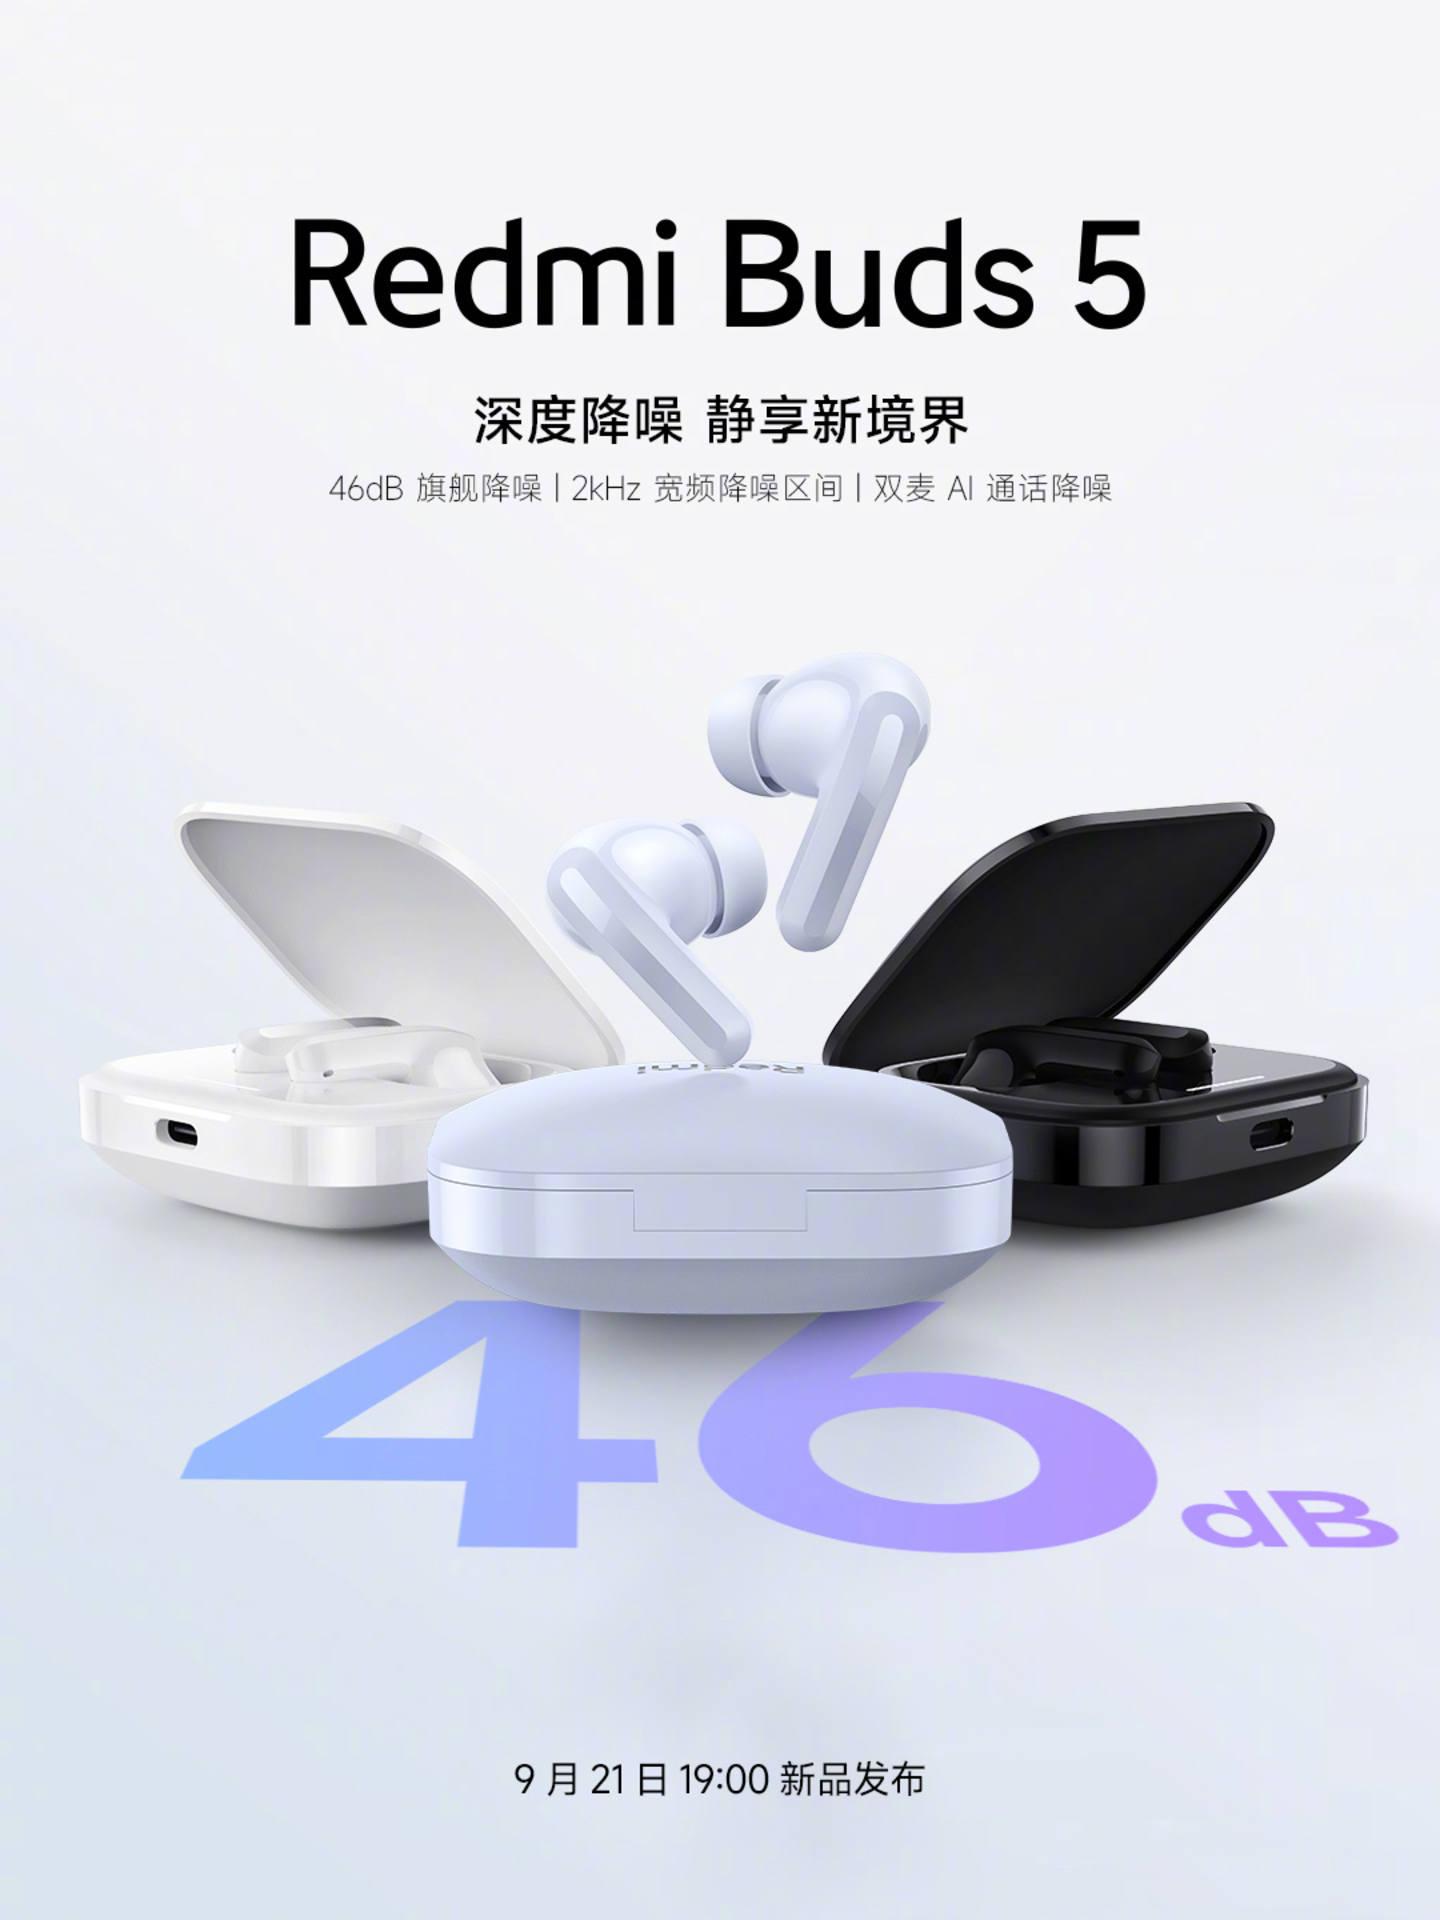 Redmi Buds 5: así son los nuevos auriculares inalámbricos baratos de Xiaomi con cancelación de ruido